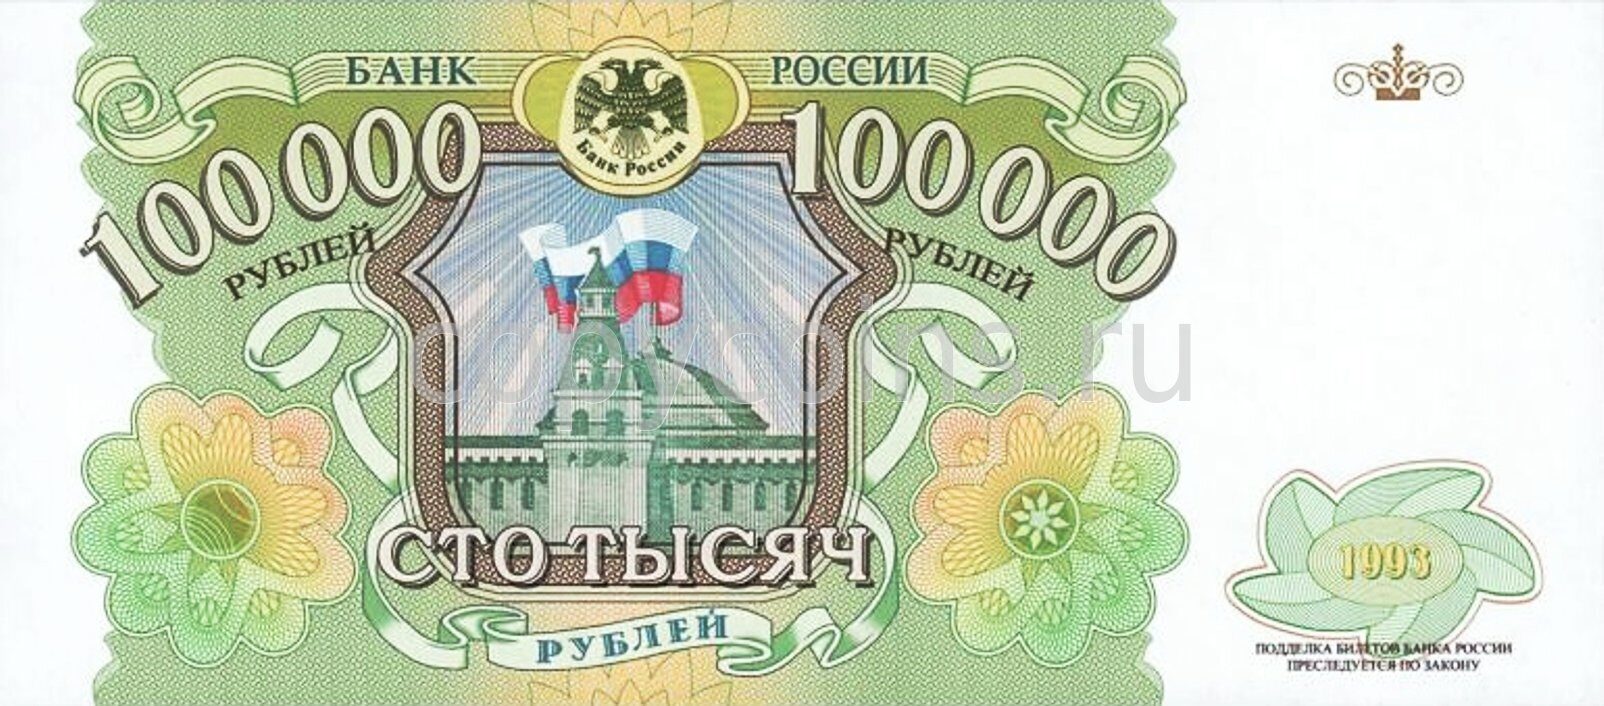 100.000 000. Банкнота 100000 рублей 1993. Банкнота 100000 рублей 1993 года. 100000 Рублей купюра 1993. Купюра 100000 рублей.